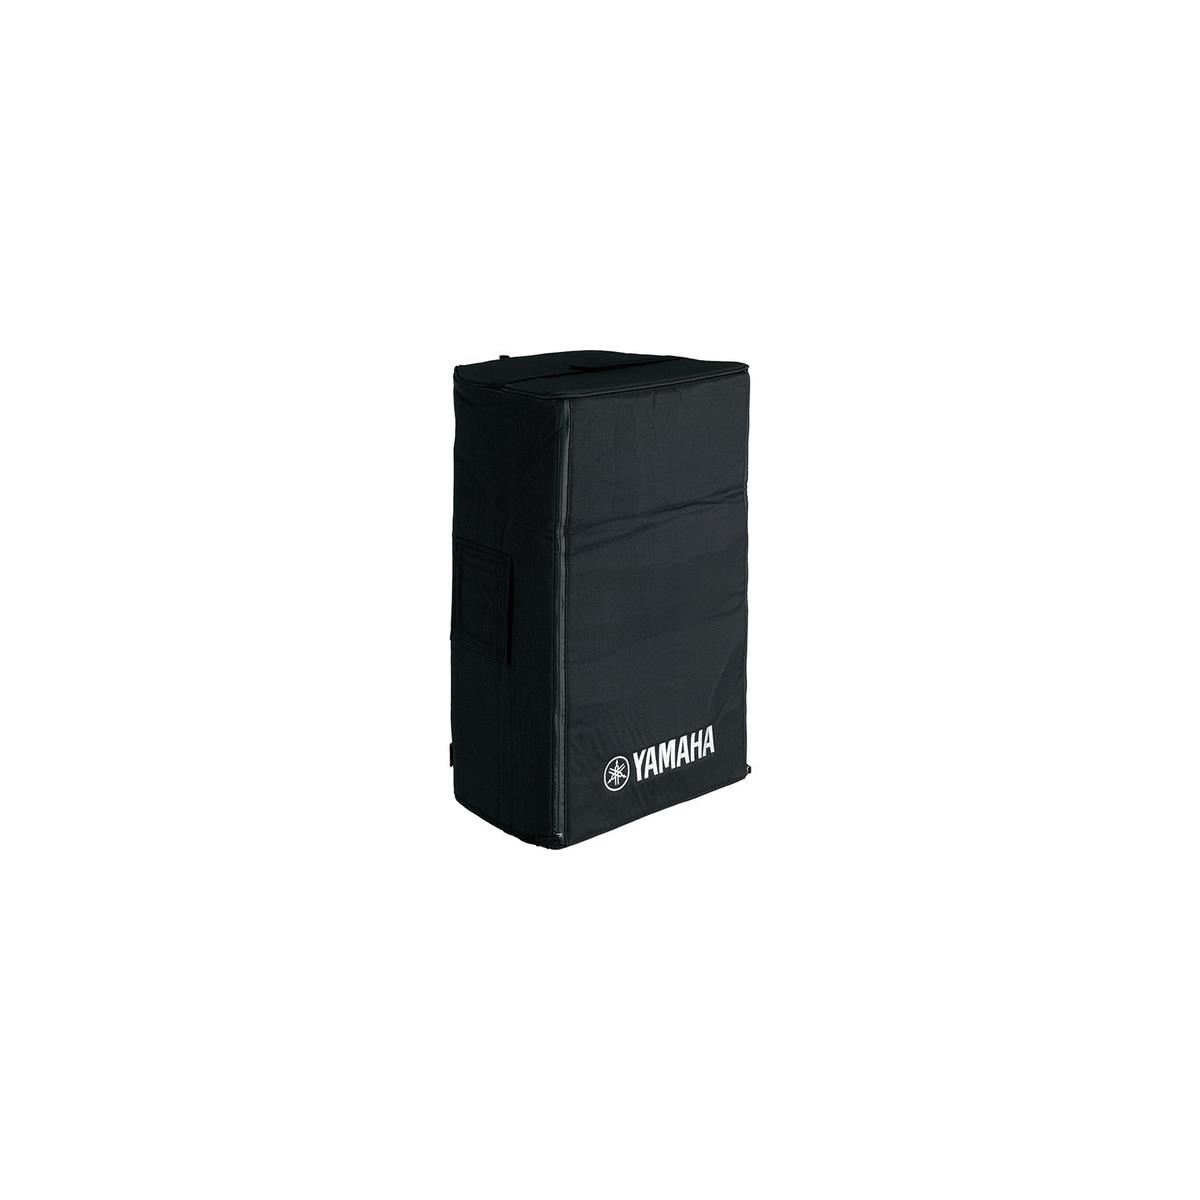 Yamaha Cover for DXR15, DBR15, CBR15 Functional Speakers -  SPCVR-1501